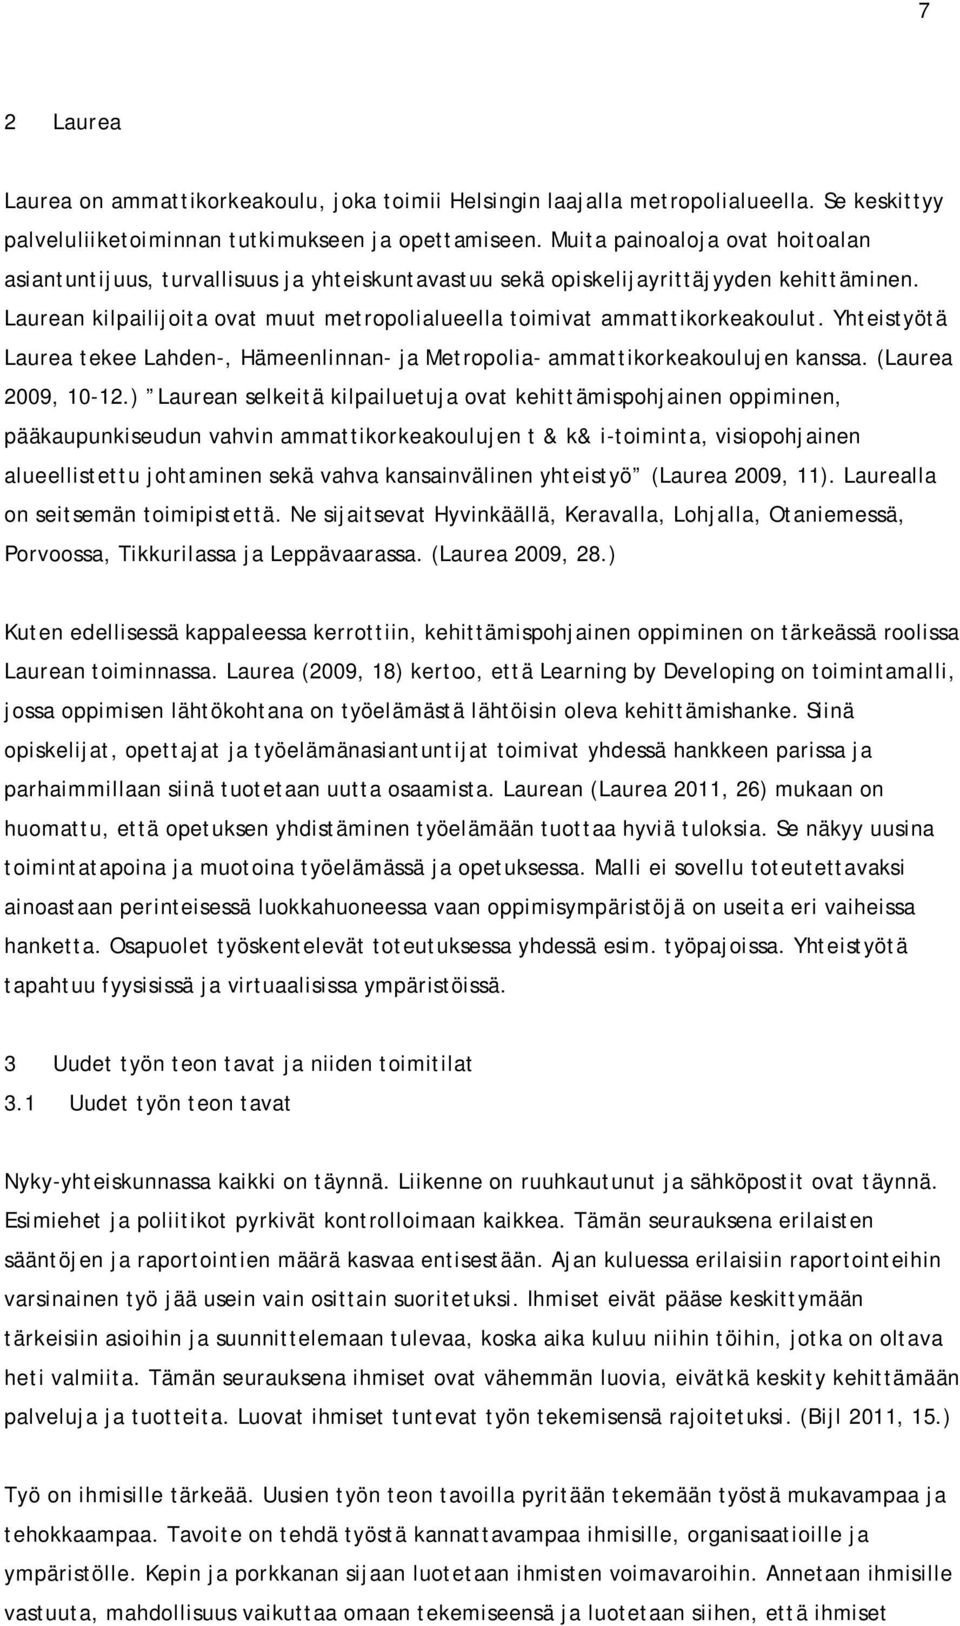 Laurean kilpailijoita ovat muut metropolialueella toimivat ammattikorkeakoulut. Yhteistyötä Laurea tekee Lahden-, Hämeenlinnan- ja Metropolia- ammattikorkeakoulujen kanssa. (Laurea 2009, 10-12.